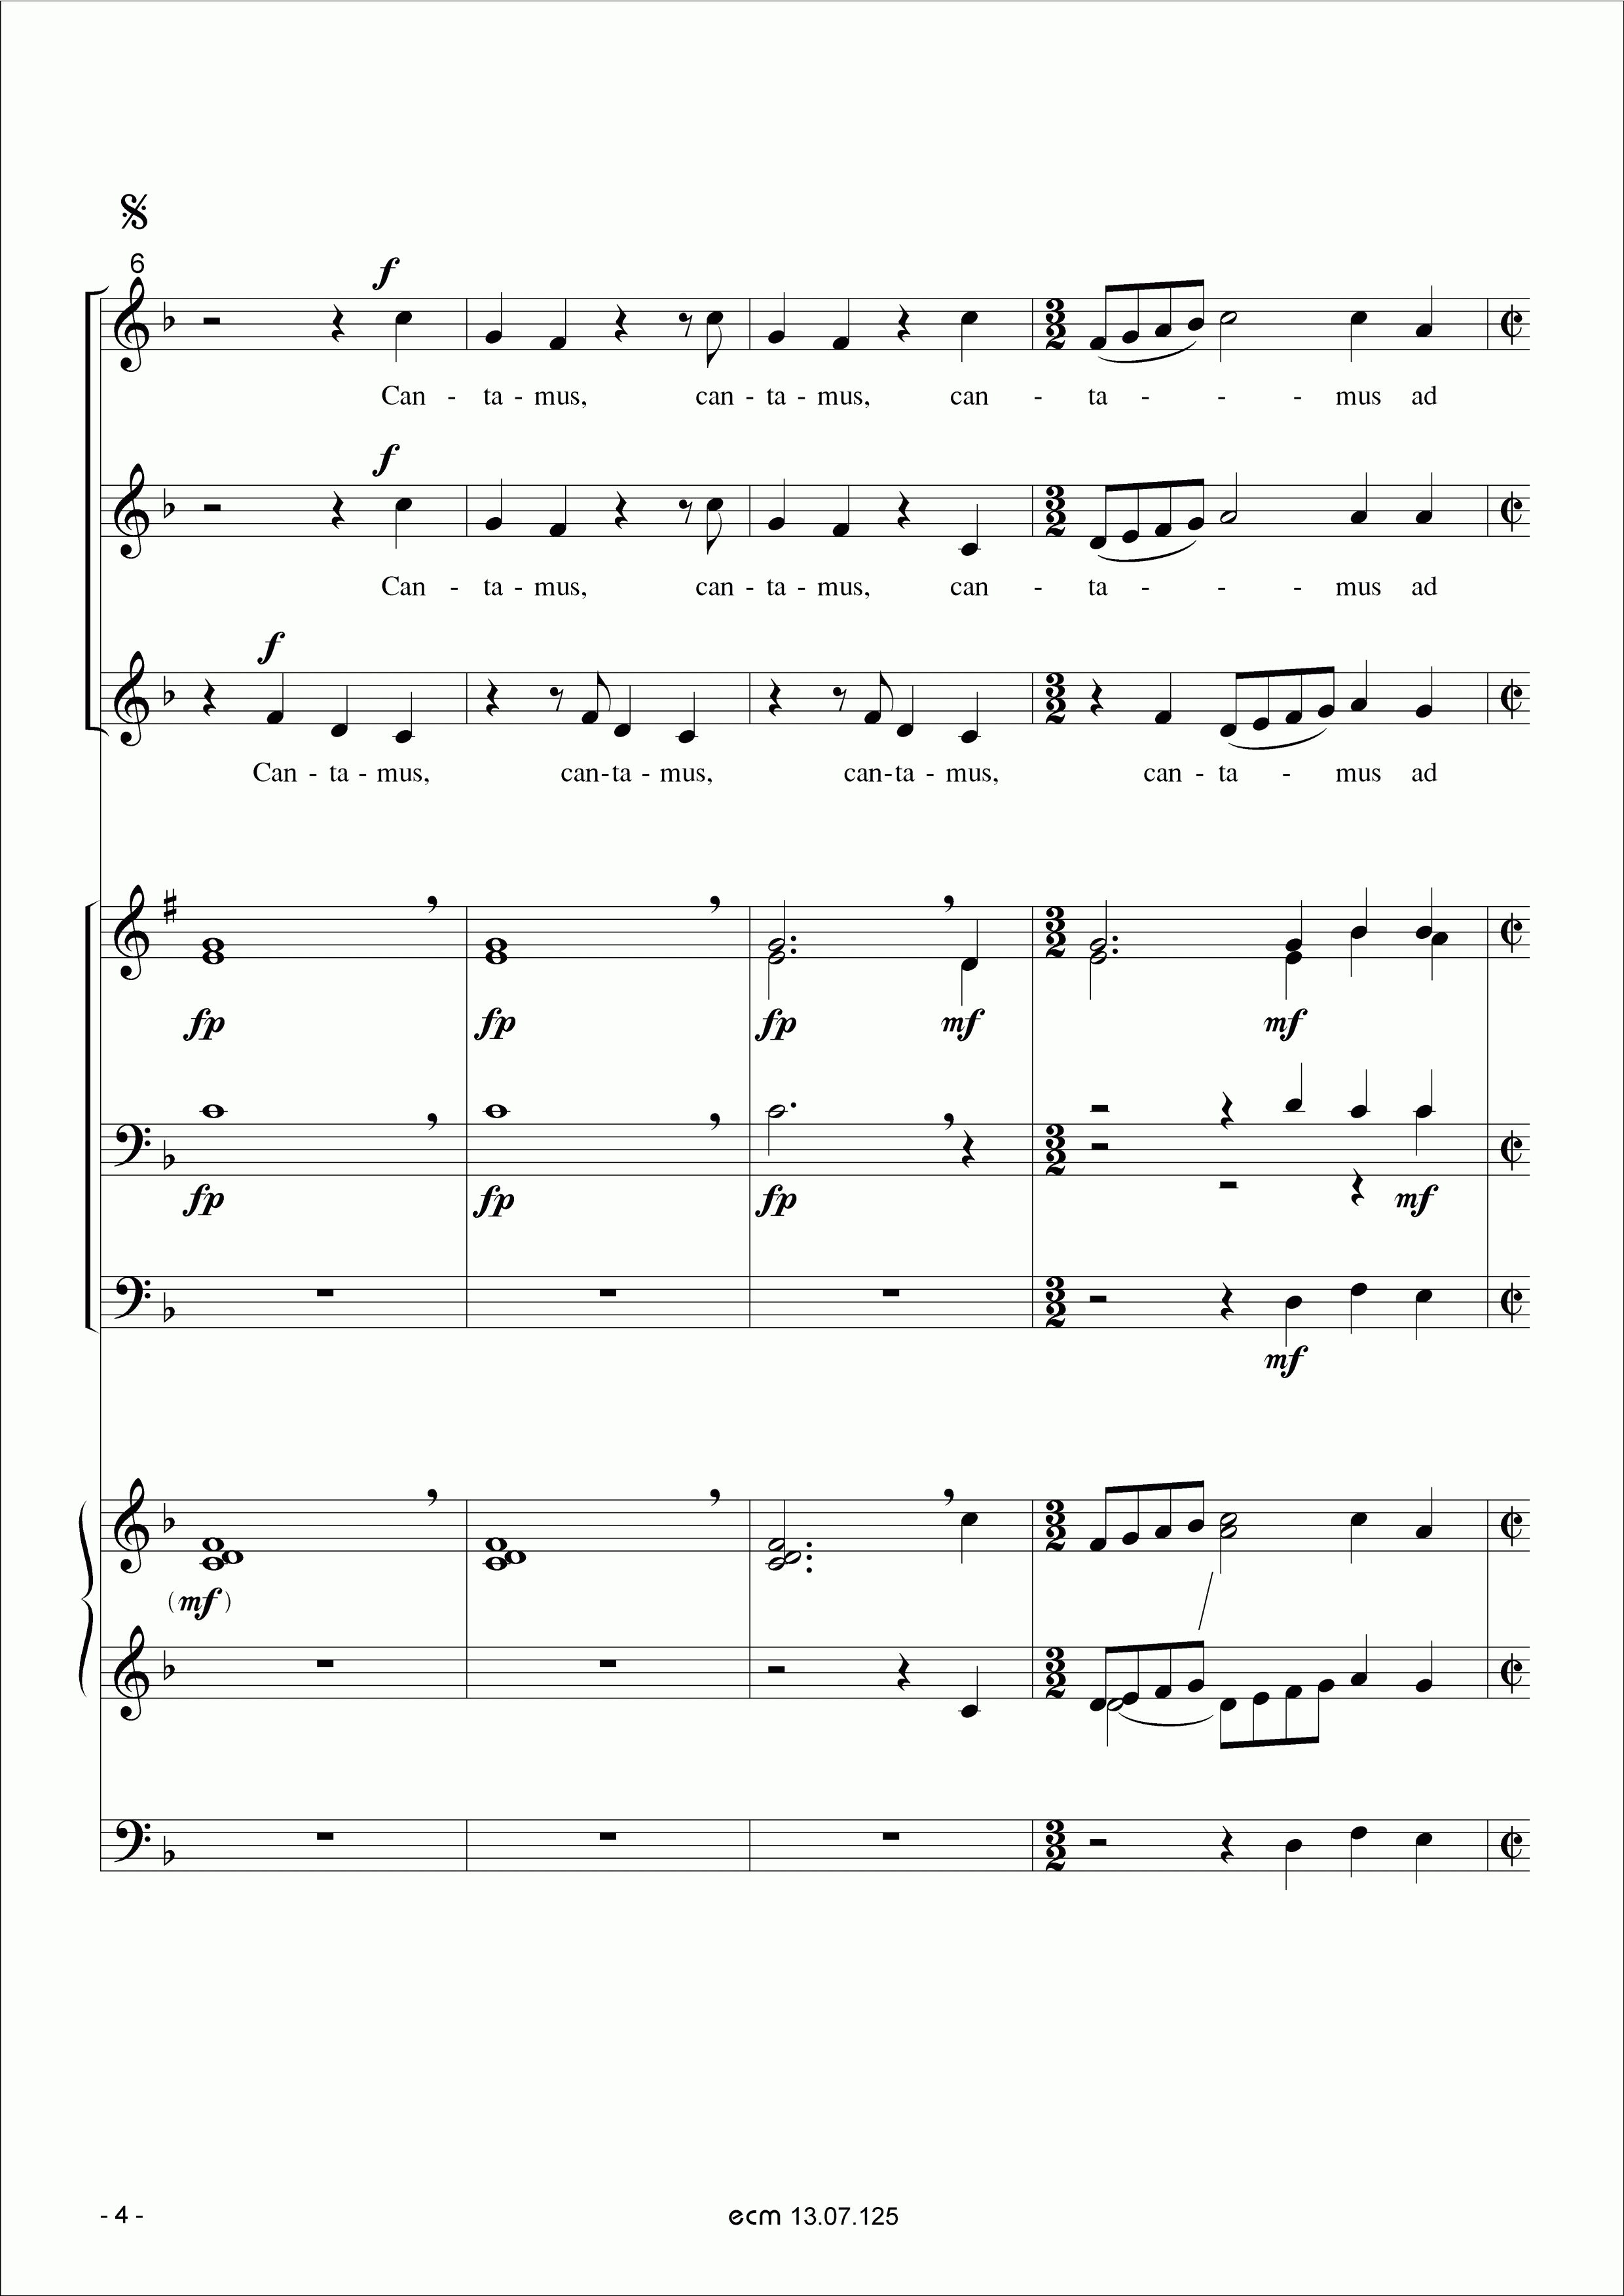 Cantamus ad gloriam musicae (Wind ensemble)